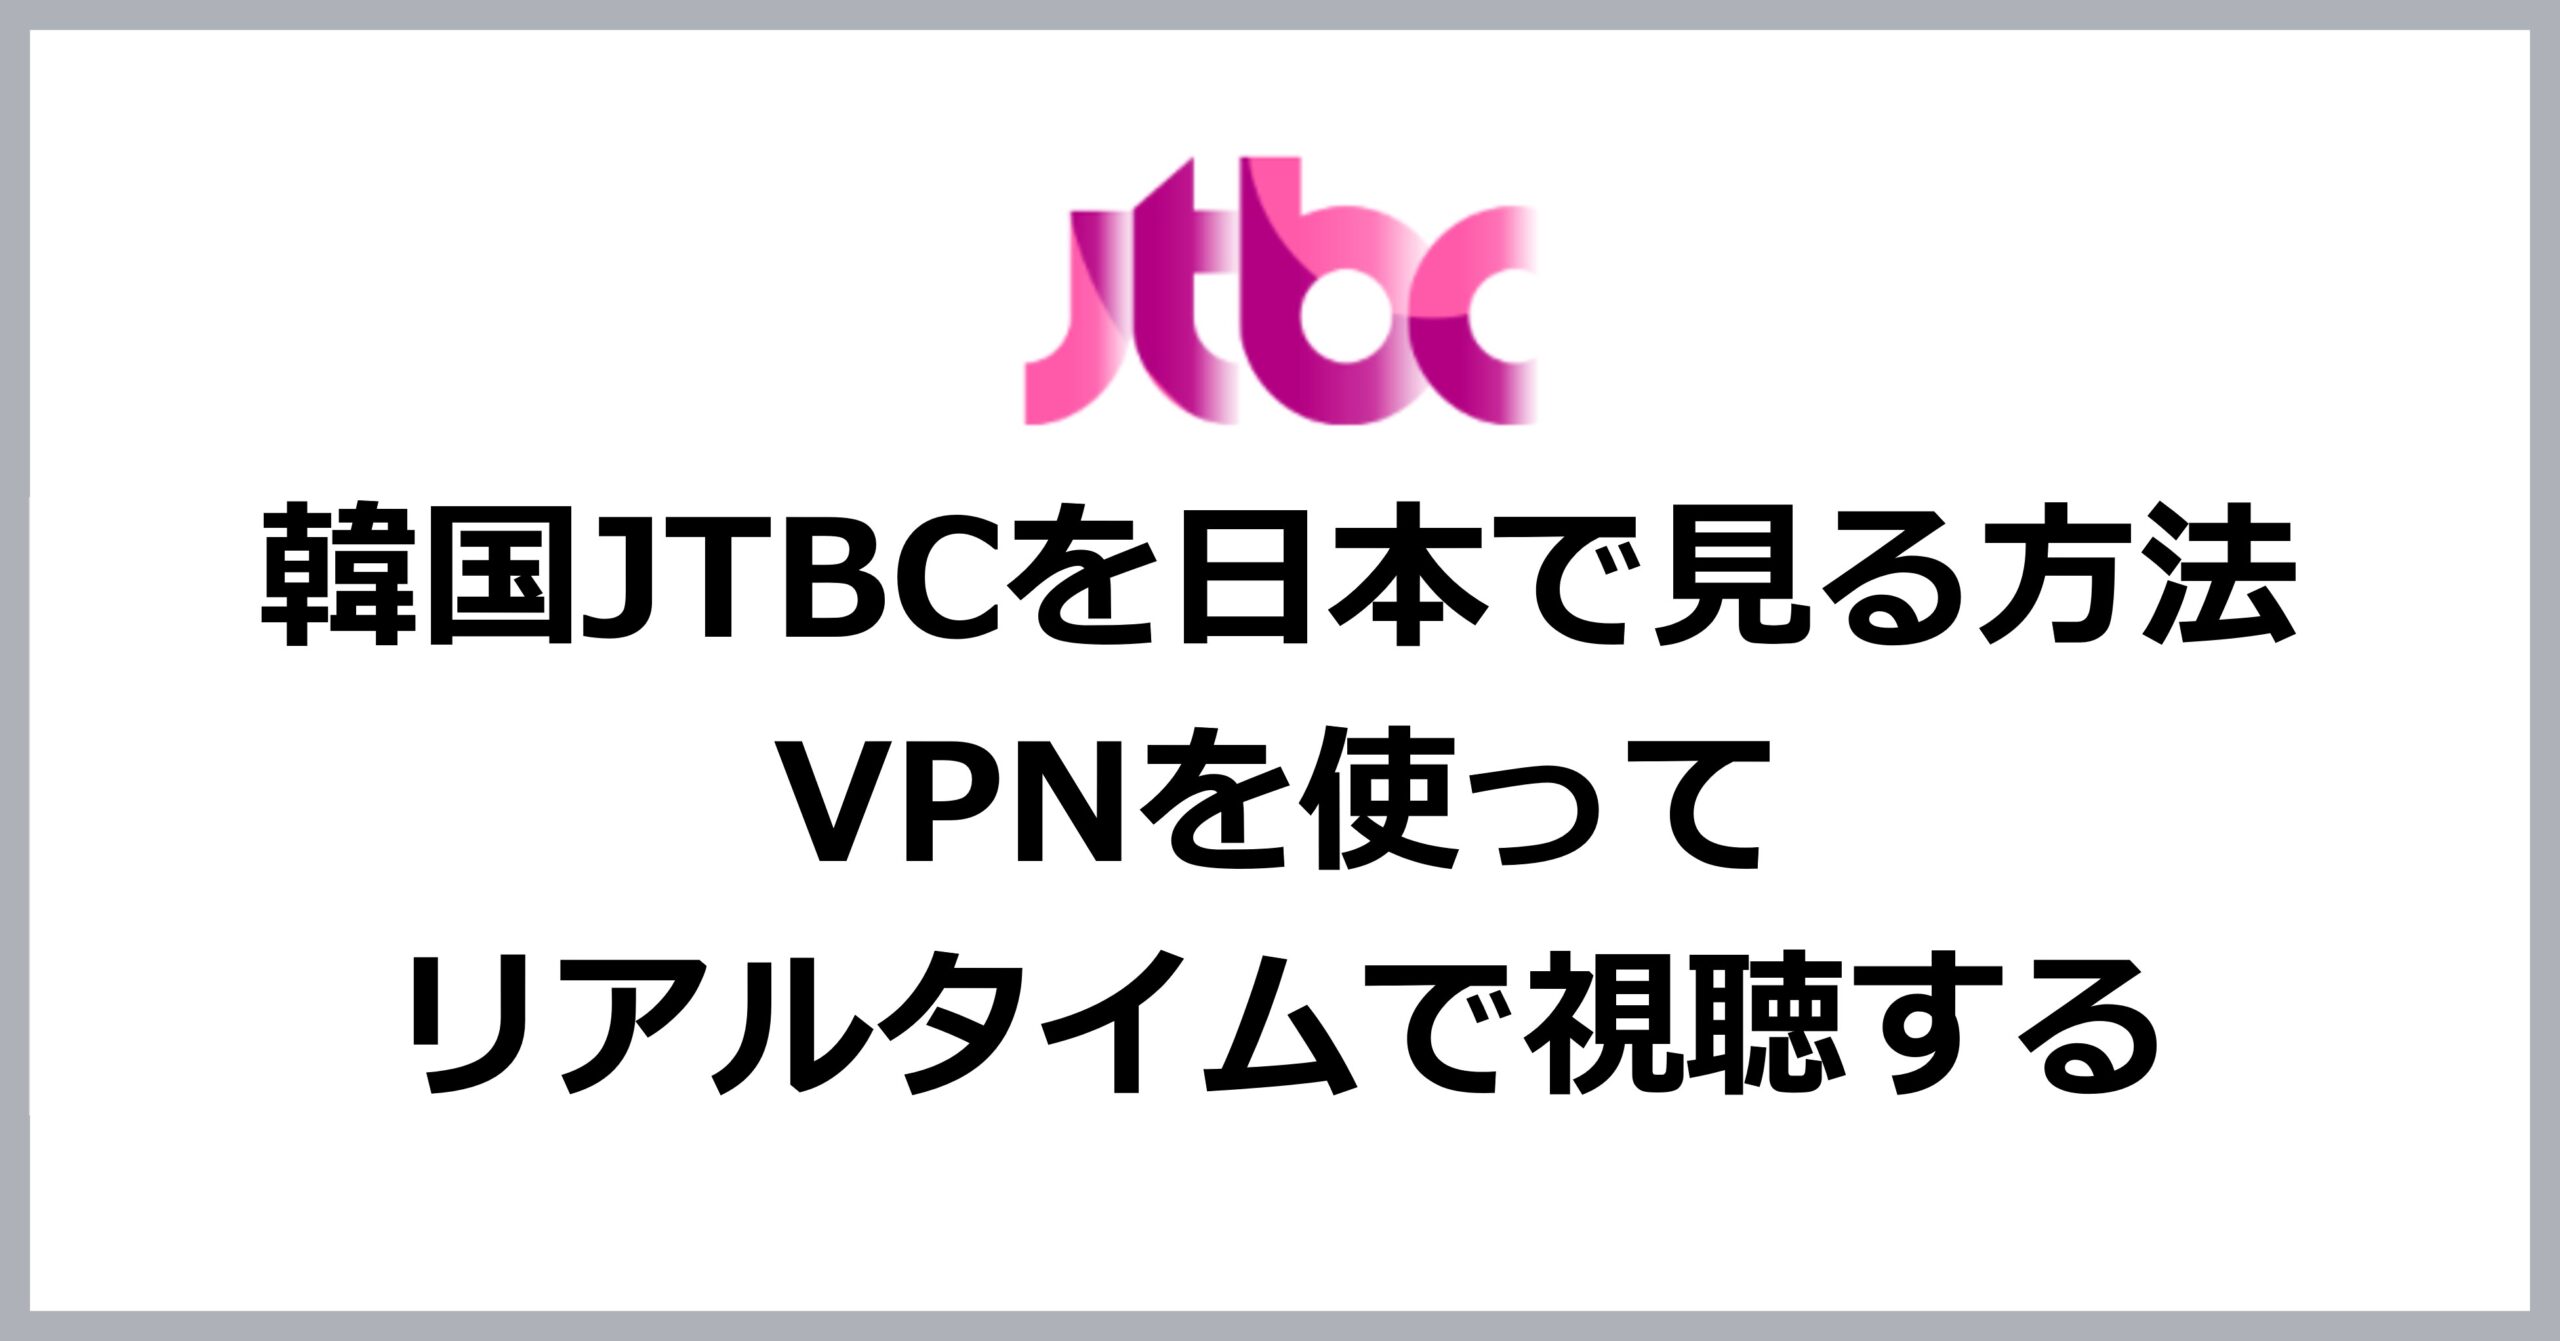 韓国JTBCを日本で見る方法